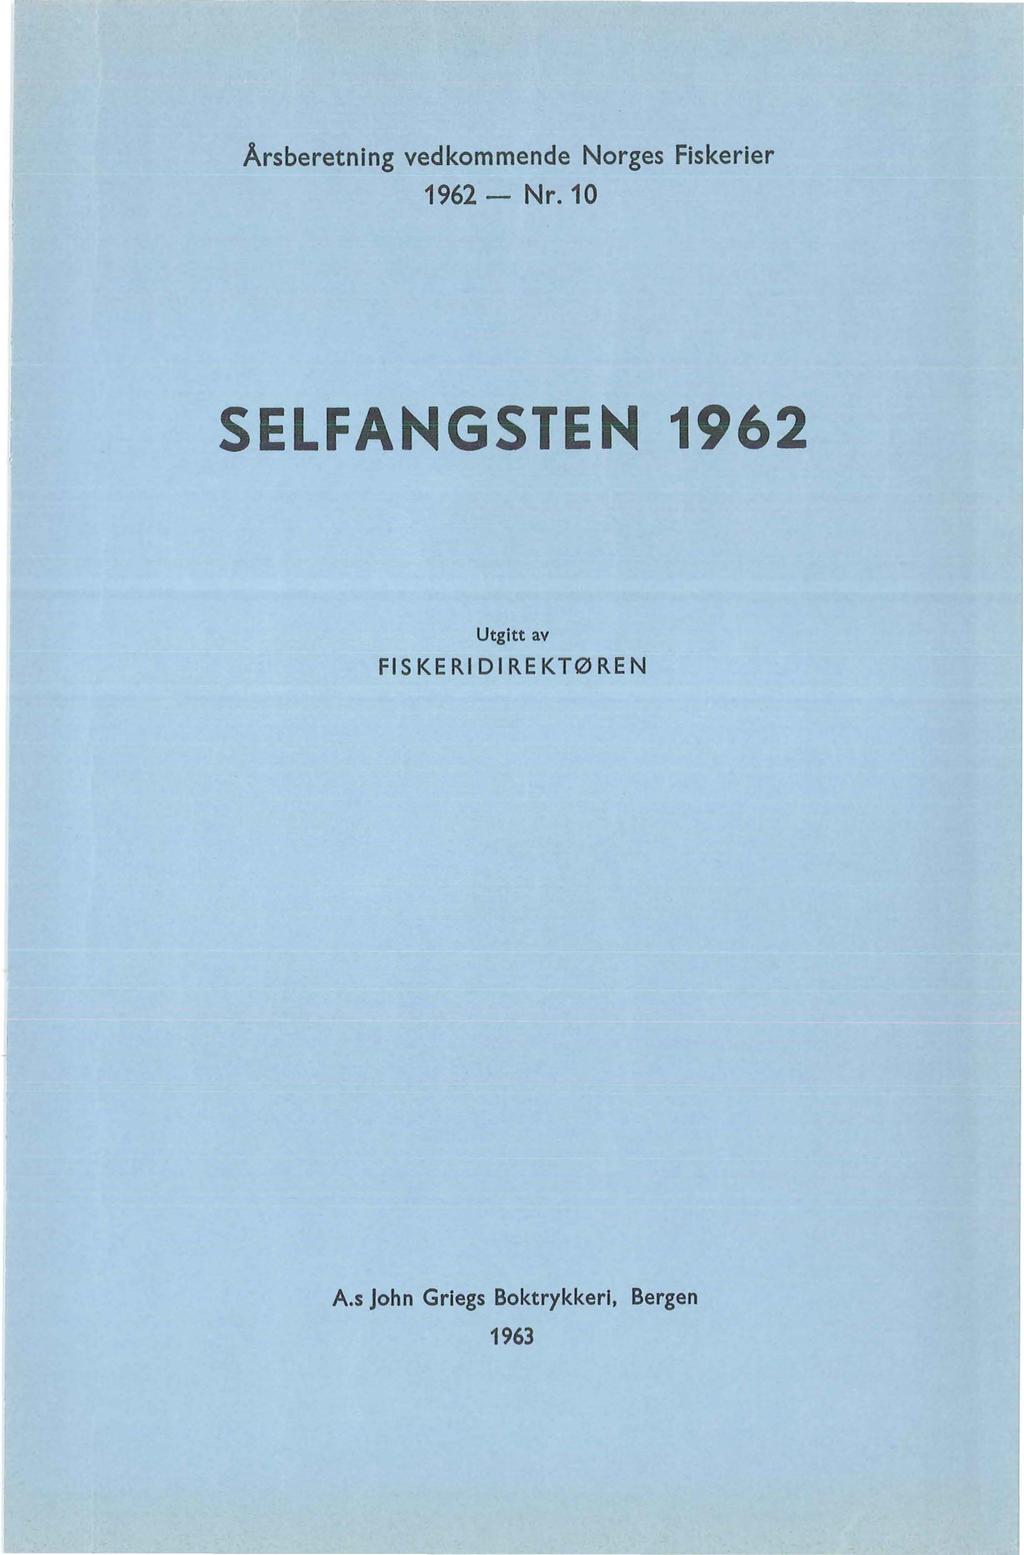 Årsberetning vedkommende Norges Fiskerier 1962- Nr.